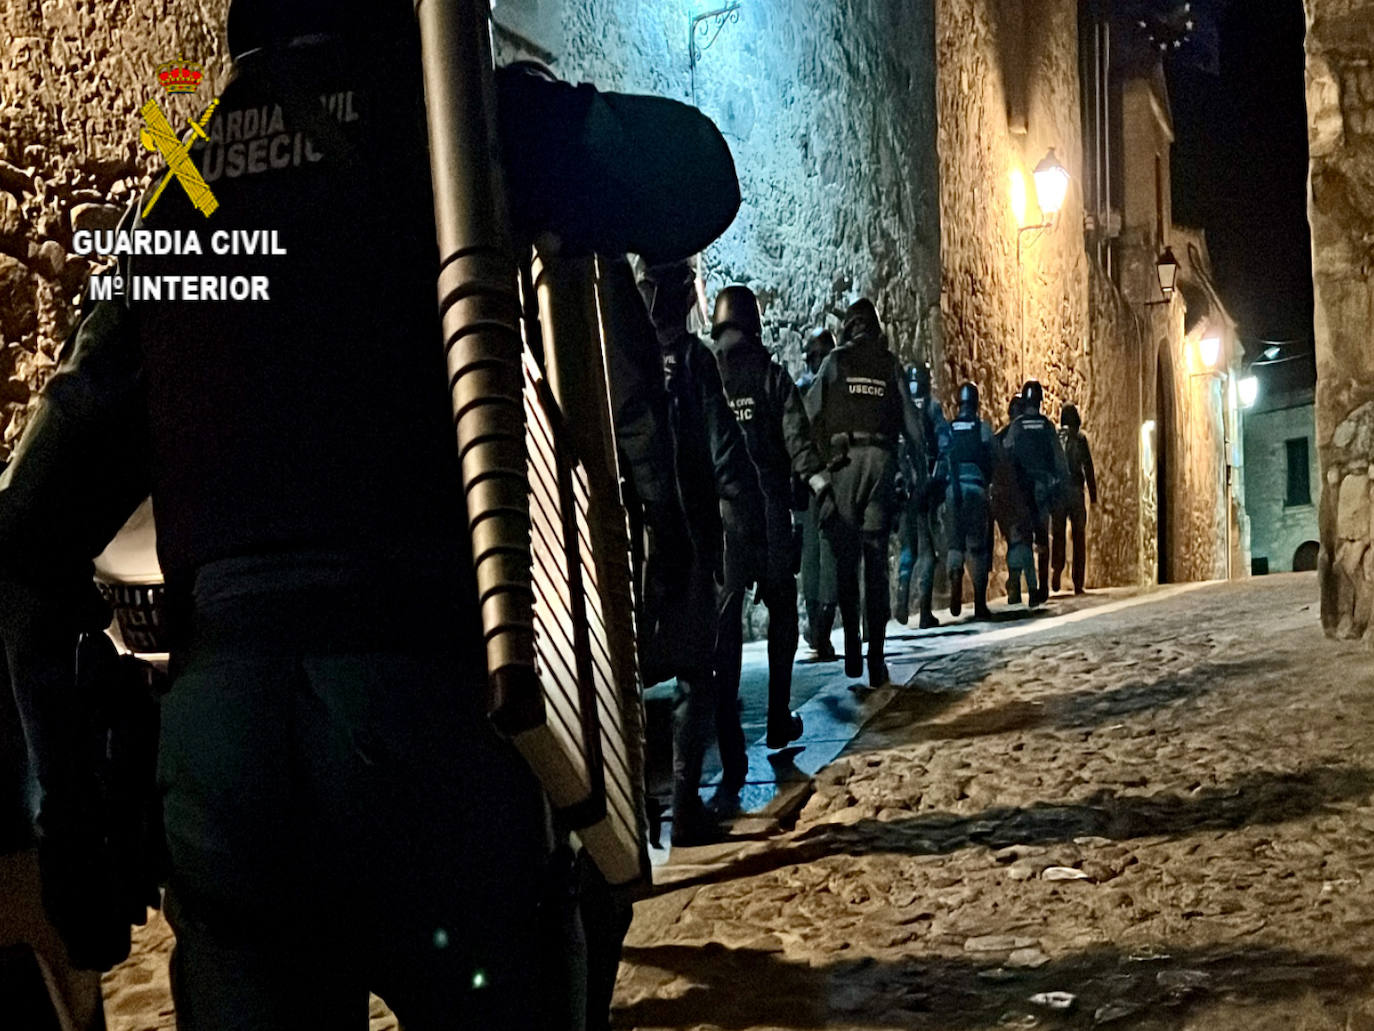 La Guardia Civil desarticula un grupo organizado de venta de drogas en la comarca de Trujillo con 11 detenidos